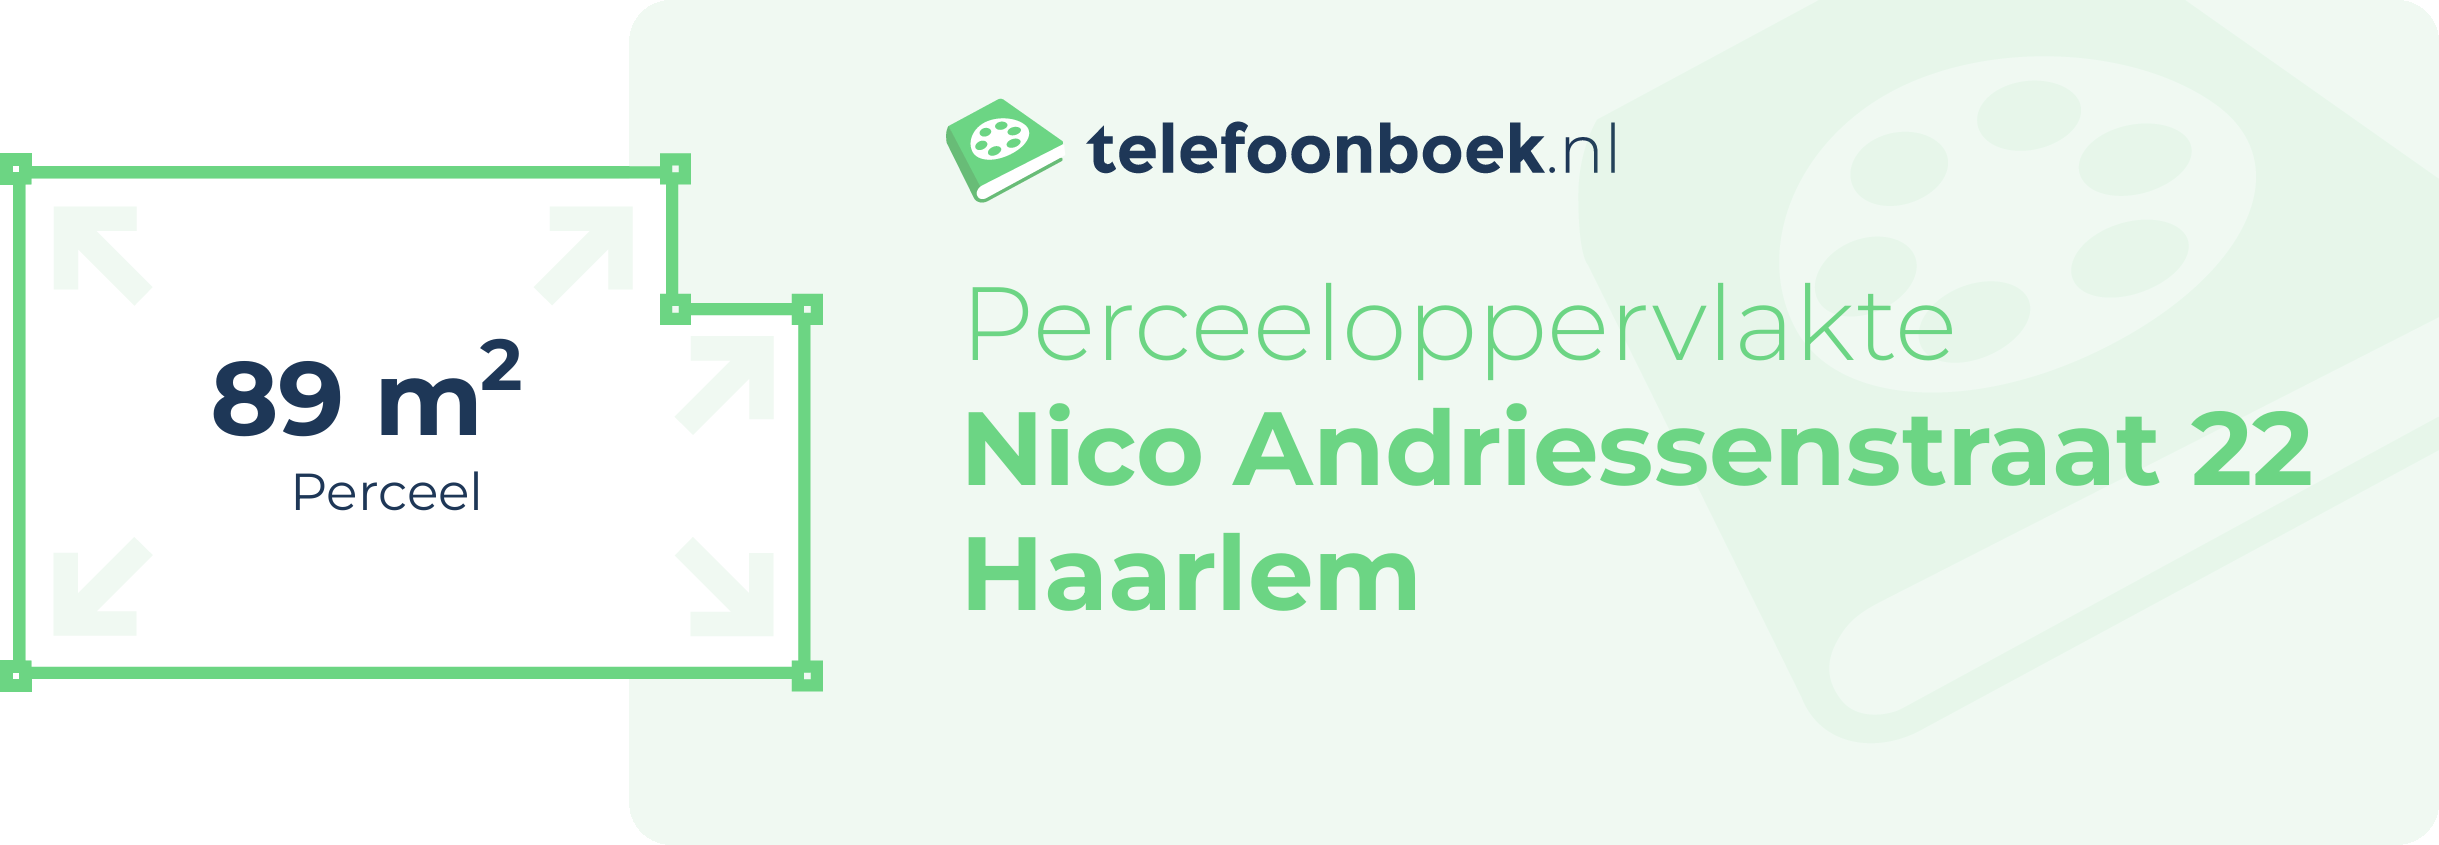 Perceeloppervlakte Nico Andriessenstraat 22 Haarlem